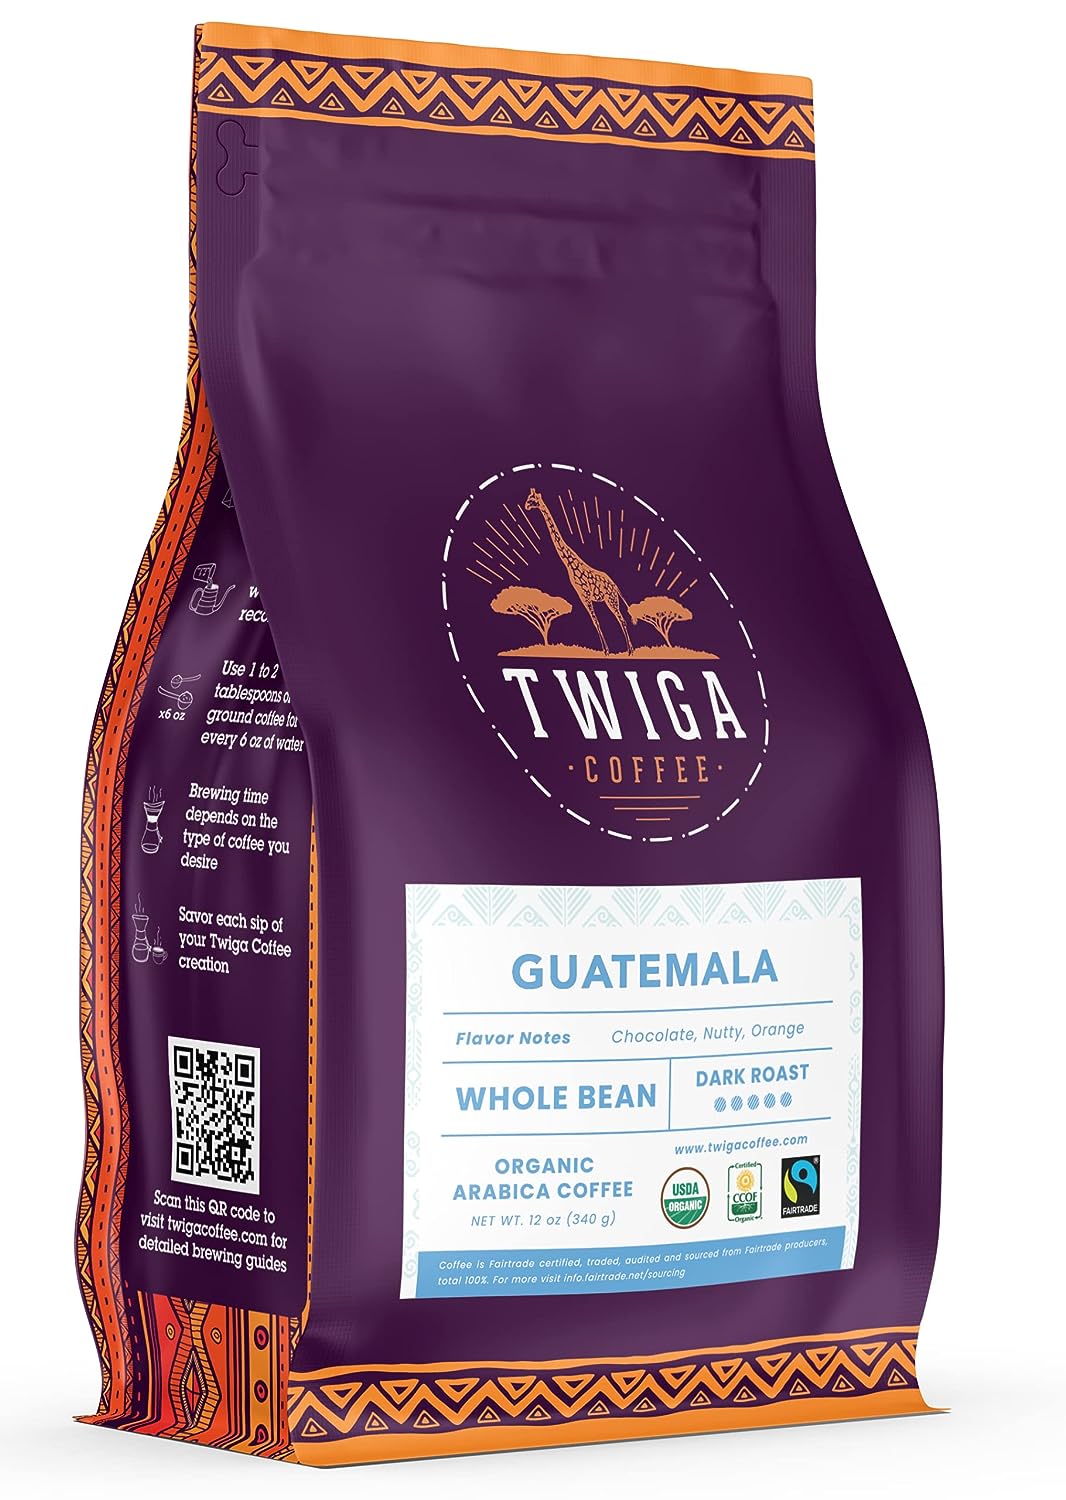 Twiga Coffee | Guatemala Coffee | USDA Organic | Fairtrade | Dark Roast | Whole Bean |